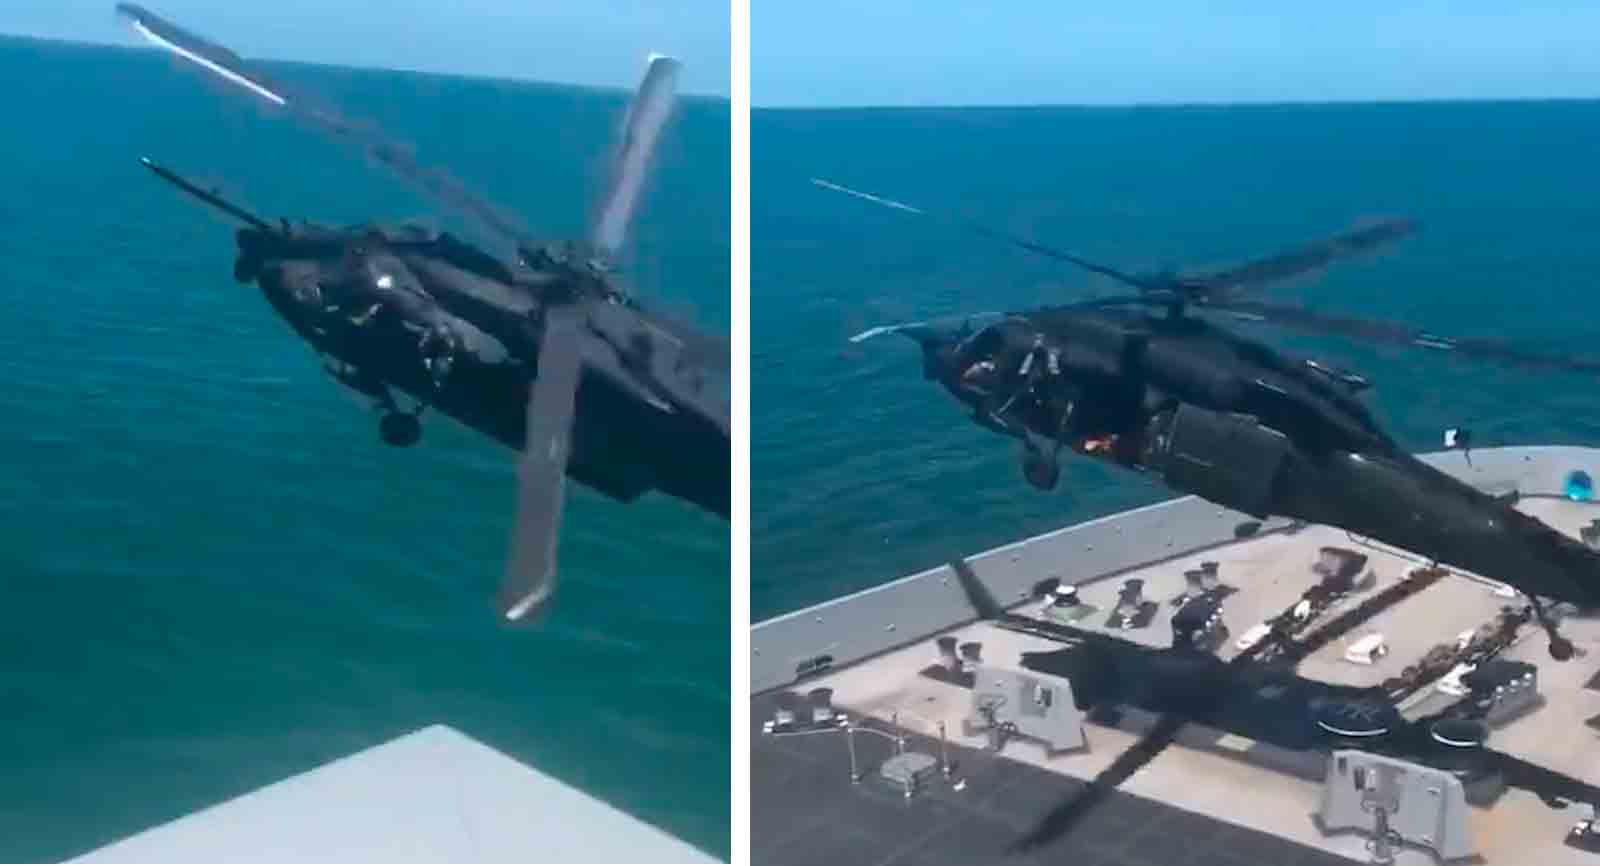 Otrolig video visar avskärning och invasion av ett rörligt skepp av en amerikansk arméhelikopter. Foto och video: Återgivning twitter @stallhornlulul